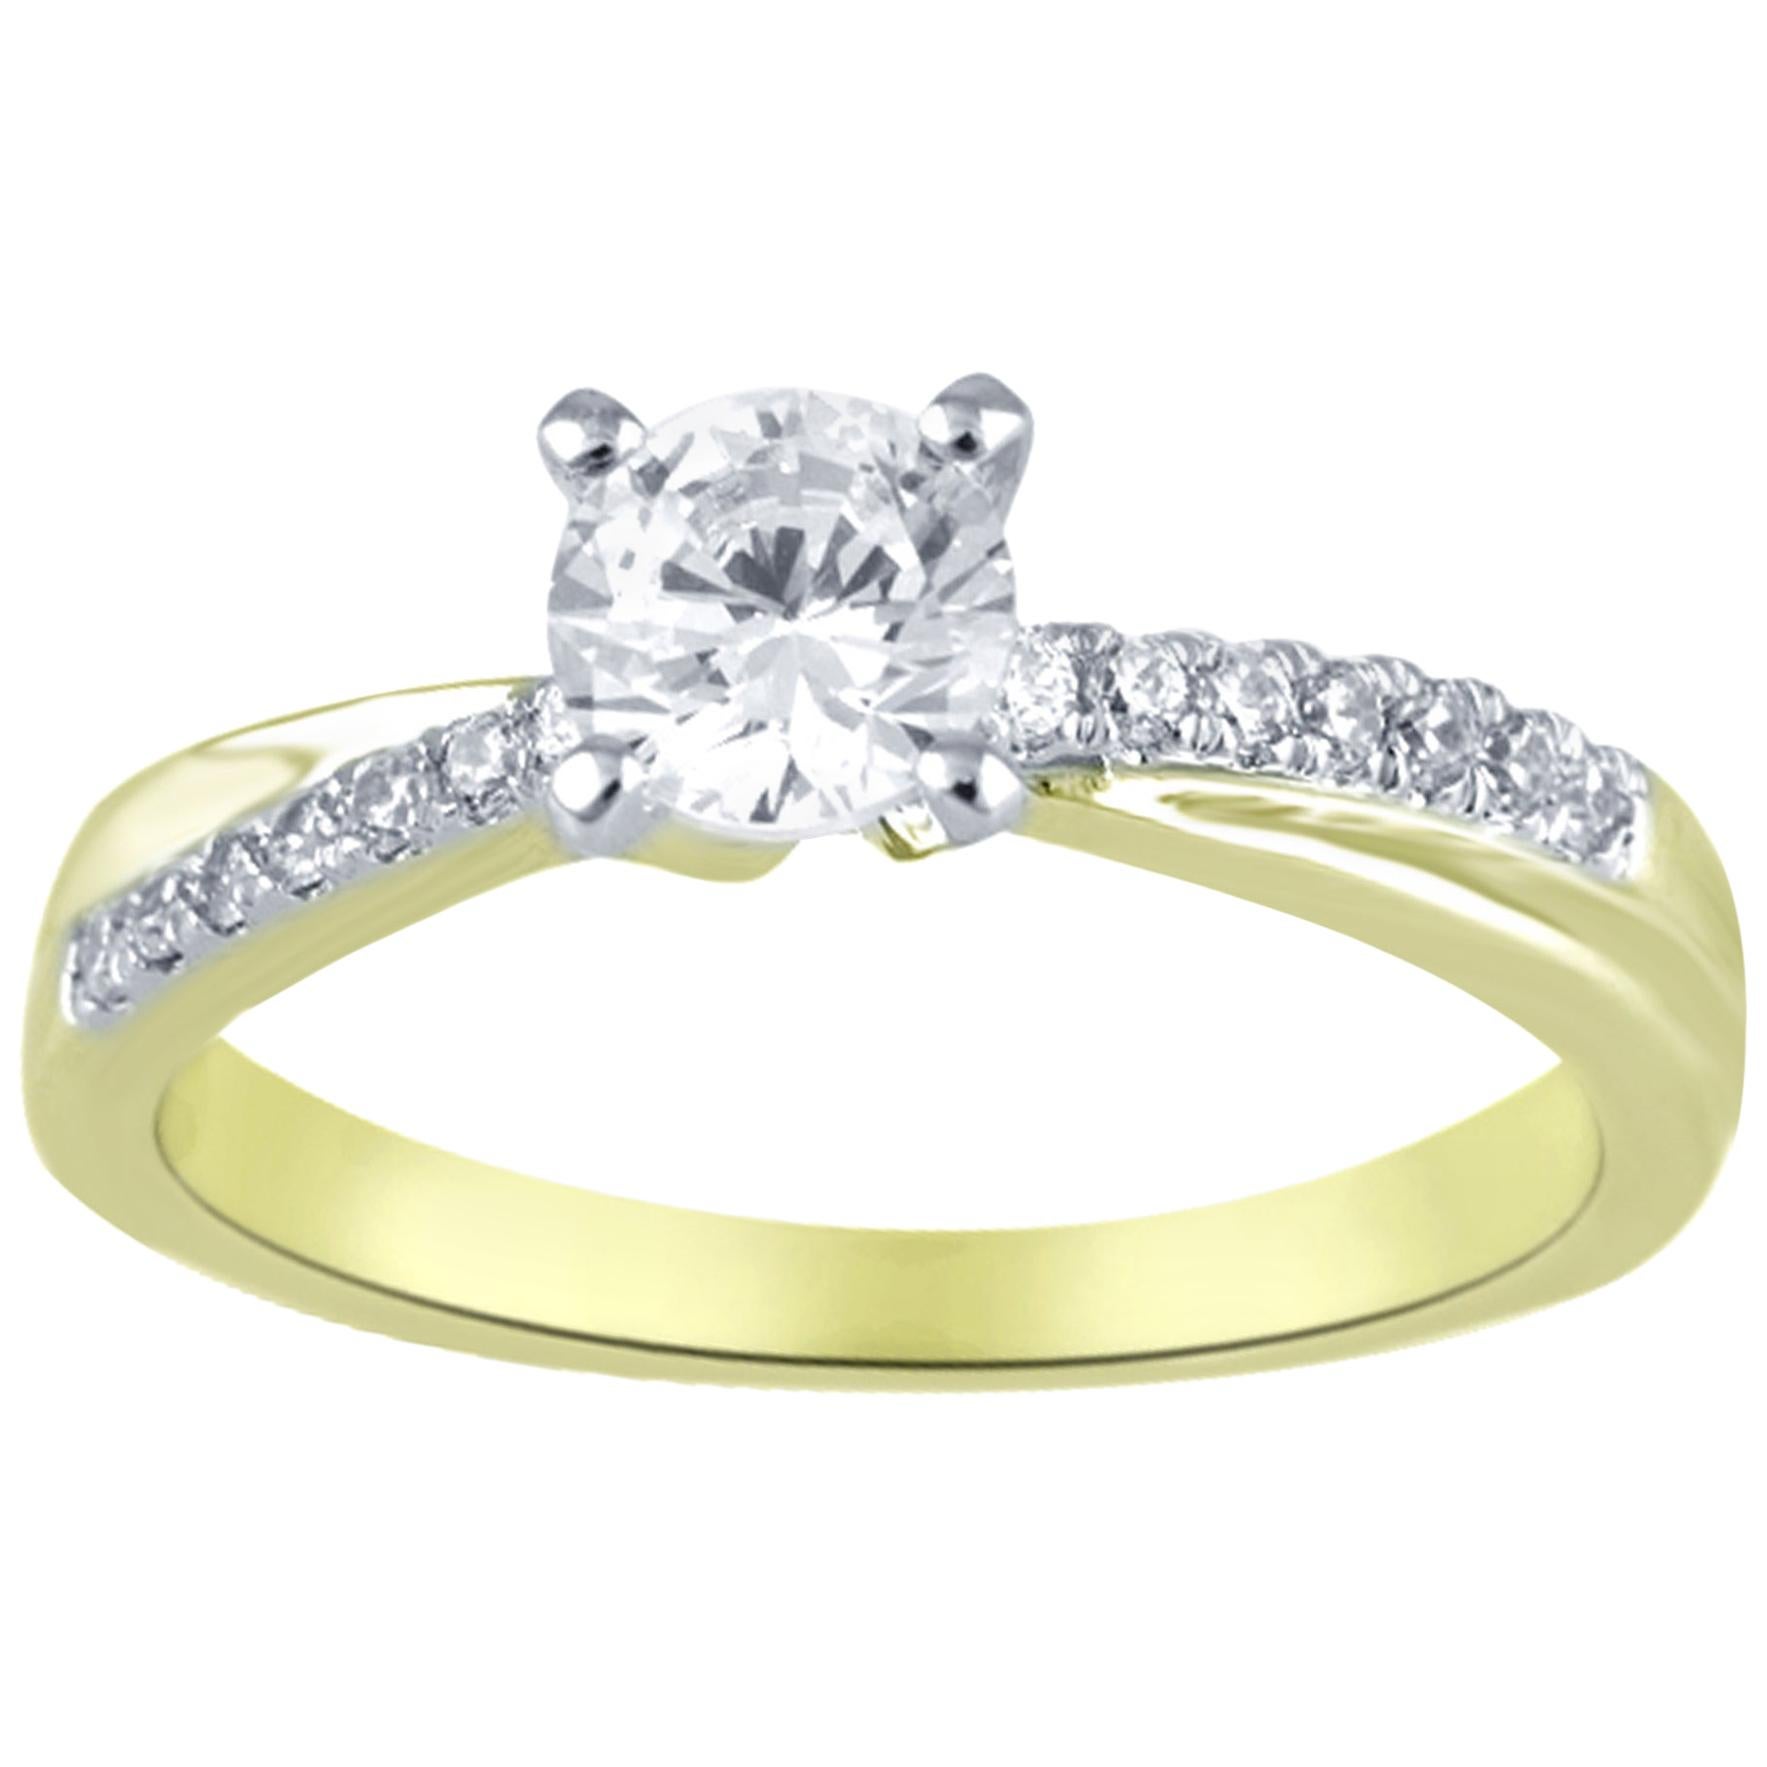 TJD 0.64 Carat Round Diamond 18 Karat Yellow Gold Designer Engagement Ring